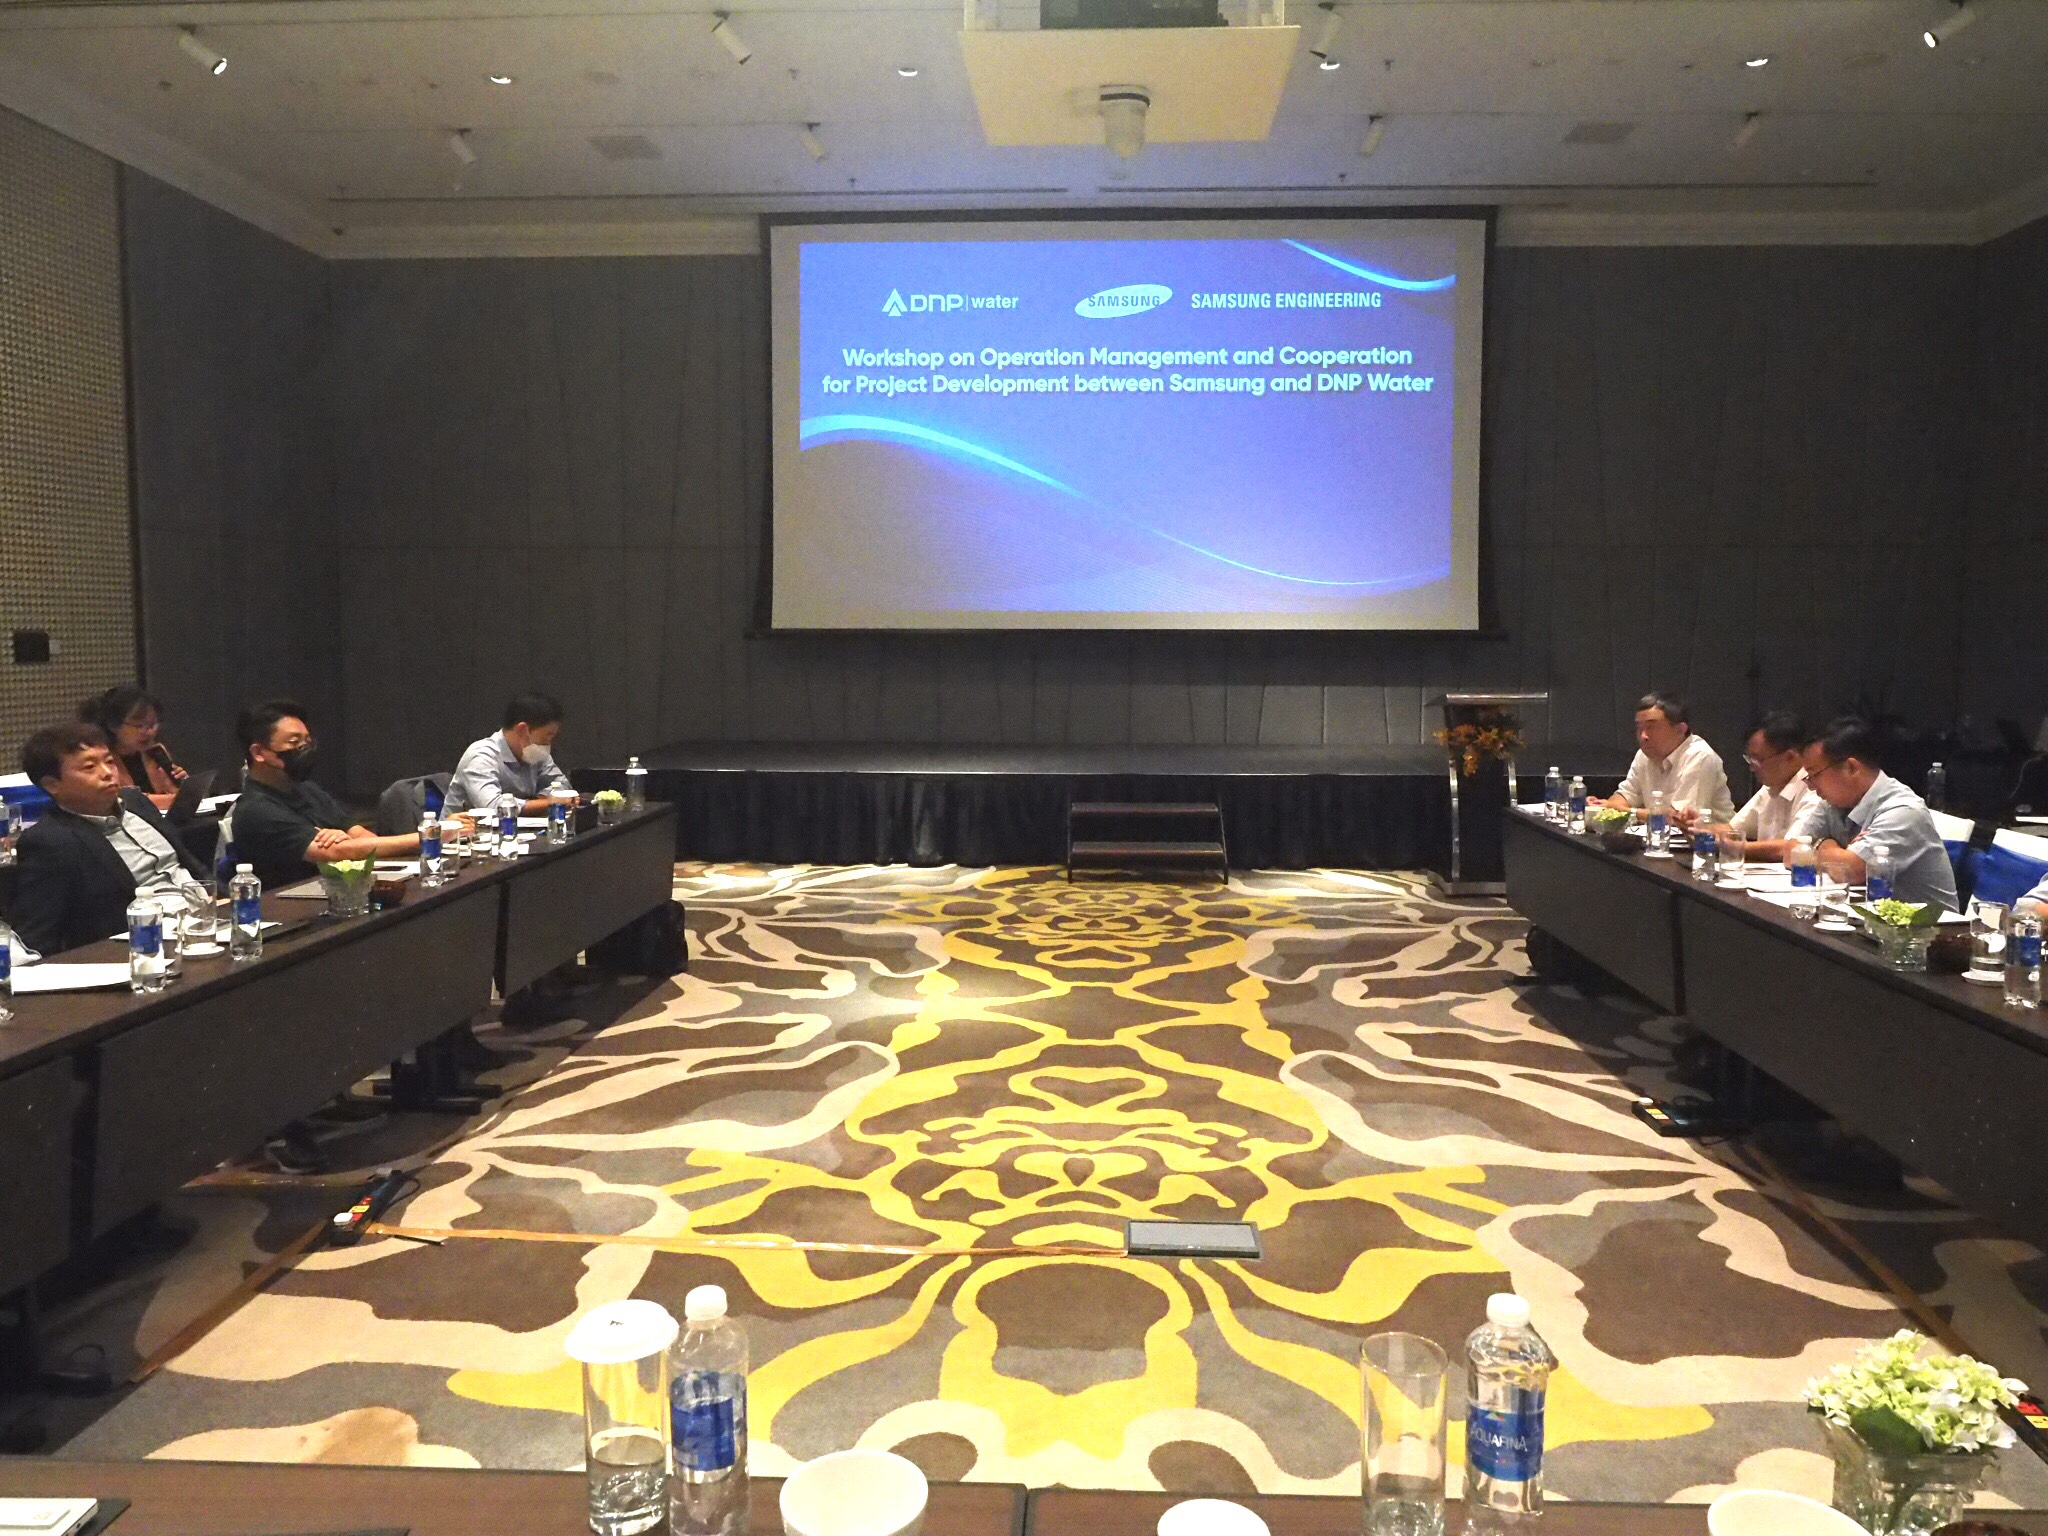 Samsung Engineering cử nhân sự tham gia HĐQT DNP Water và tổ chức hội thảo về xử lý nước thải - 3